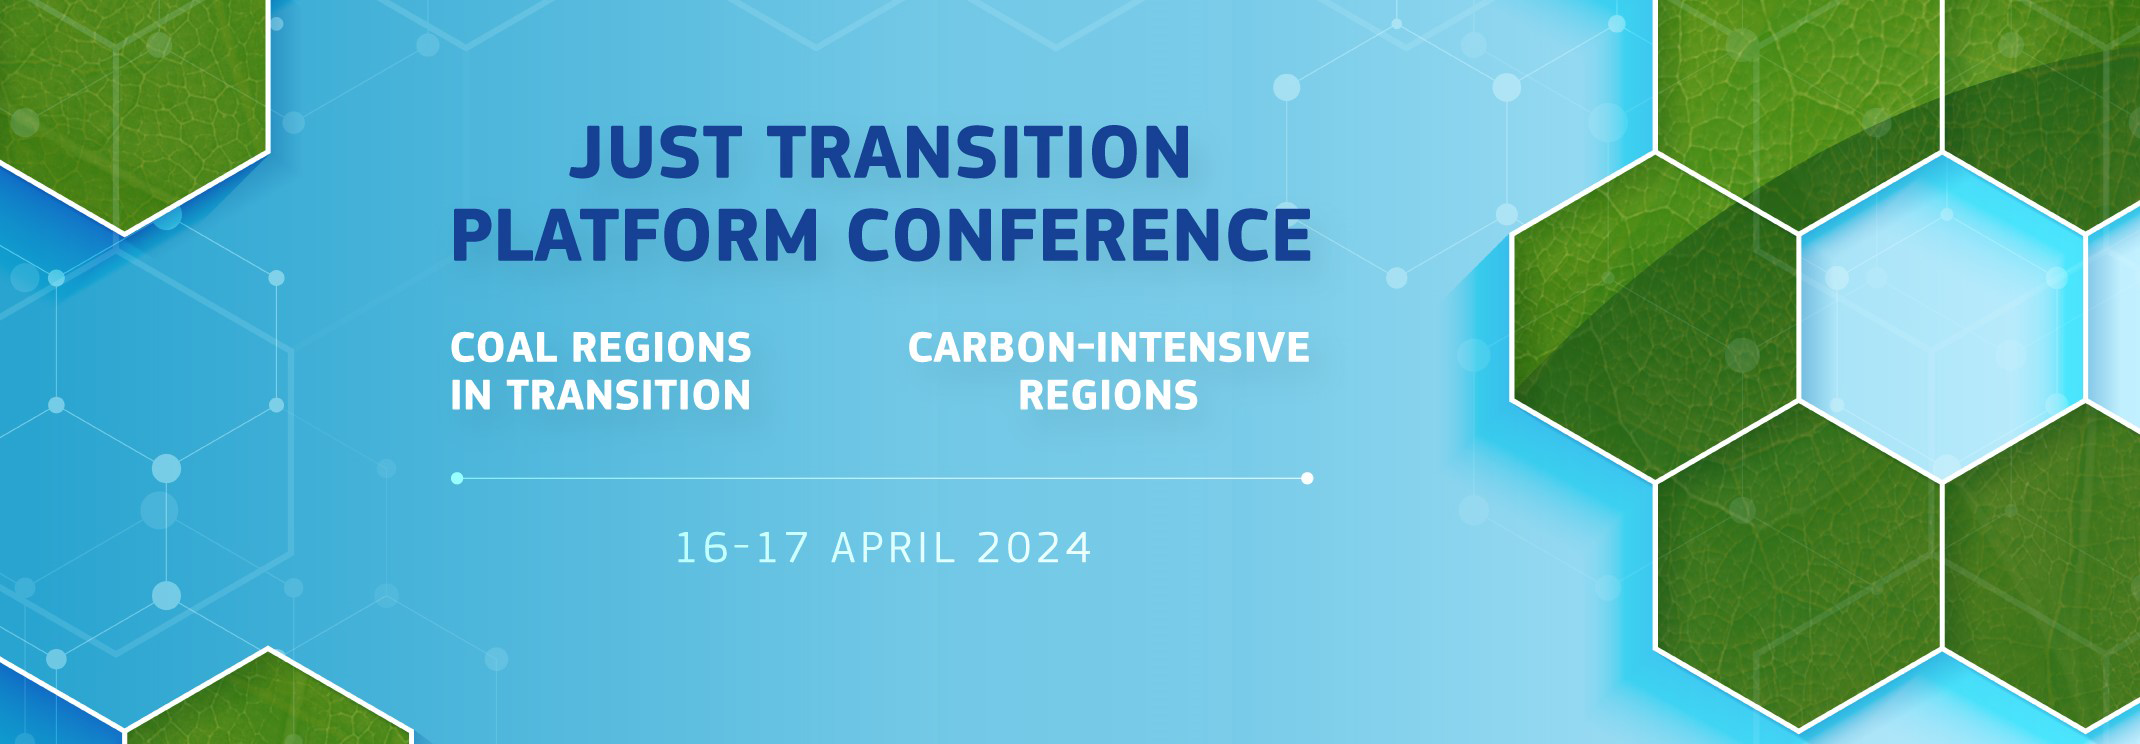 Just Transition Platform Conference – 16-18 April 2024